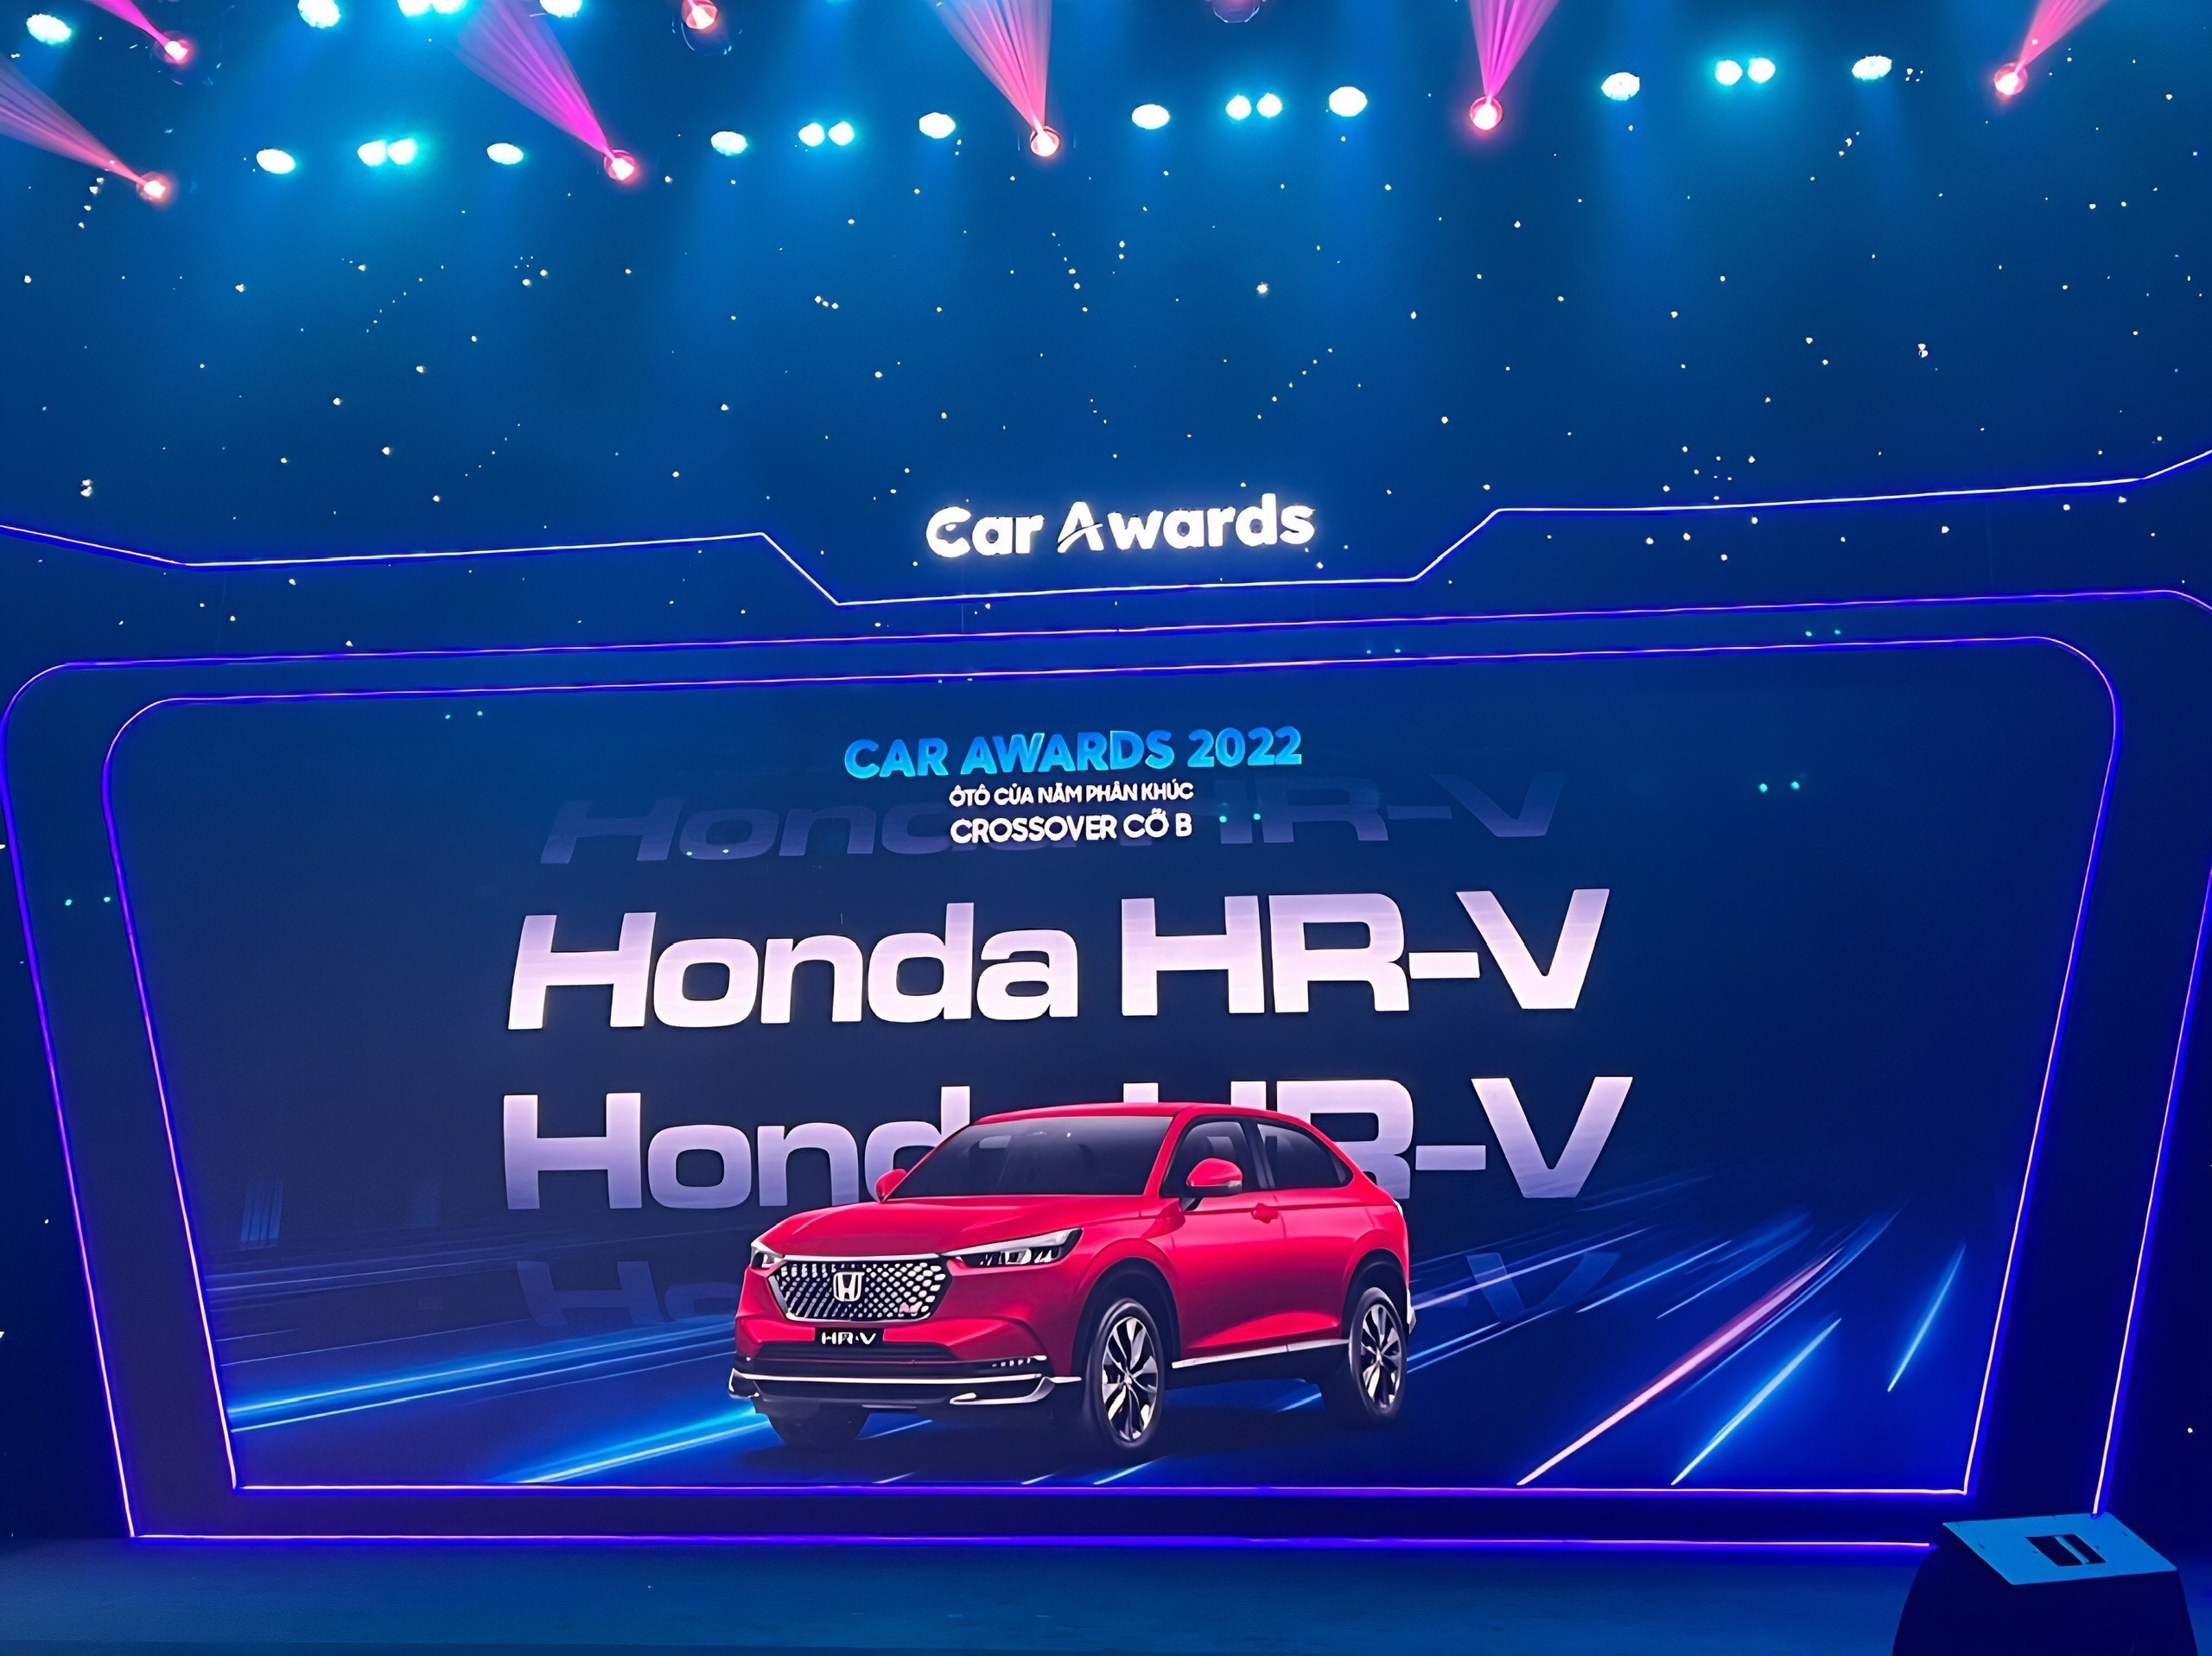 Honda HR-V và Honda Civic vinh dự nhận Giải thưởng “Ôtô của năm” phân khúc xe Crossover cỡ B và phân khúc xe gầm thấp cỡ C năm 2022